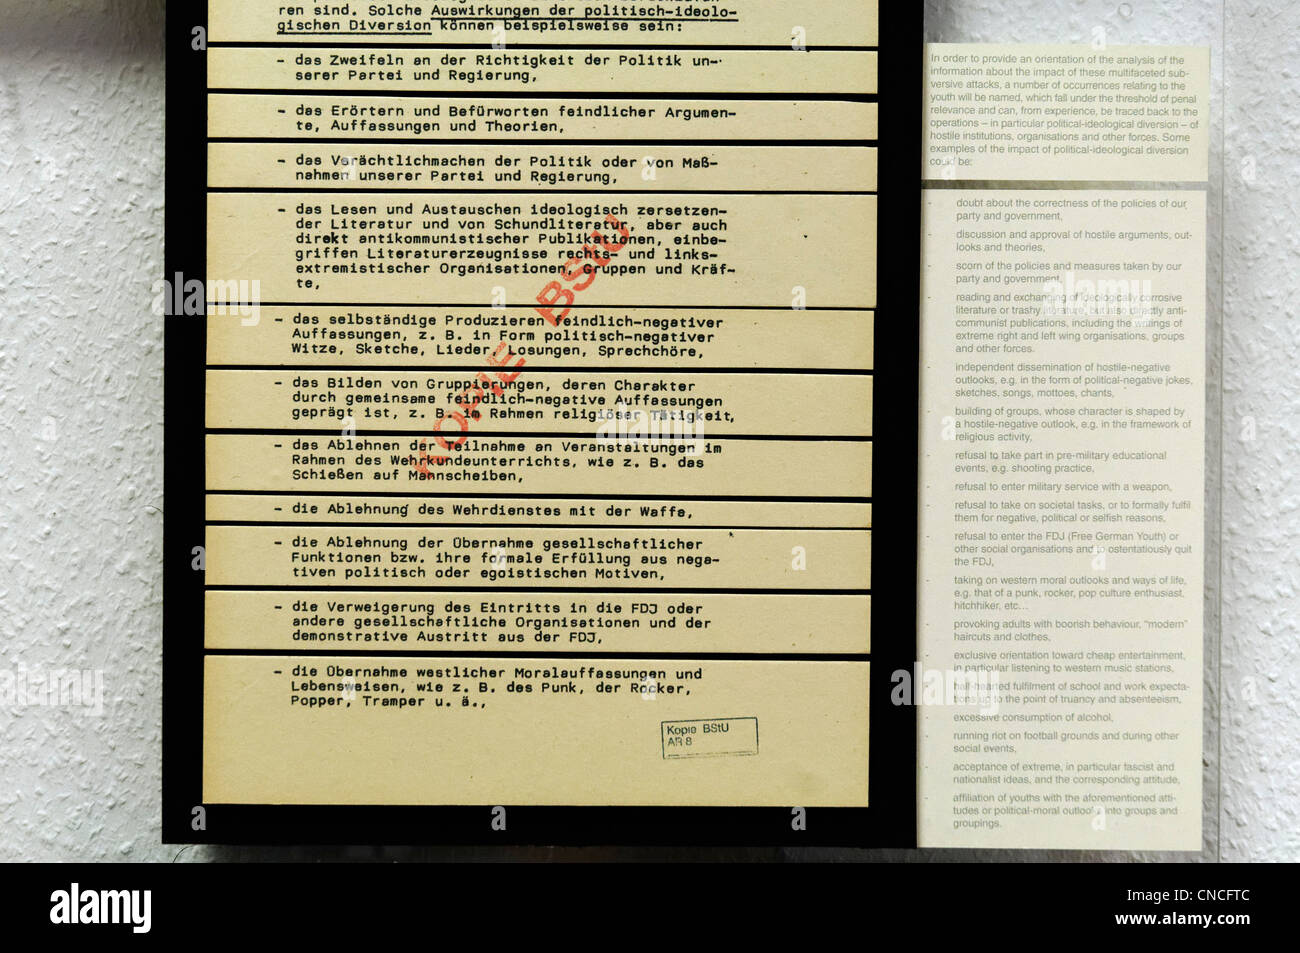 Eine Liste der verdächtiges Verhalten an die Stasi in der DDR, einschließlich der modernen Musik anhören, haben lange Haare, etc. ausgegeben Stockfoto